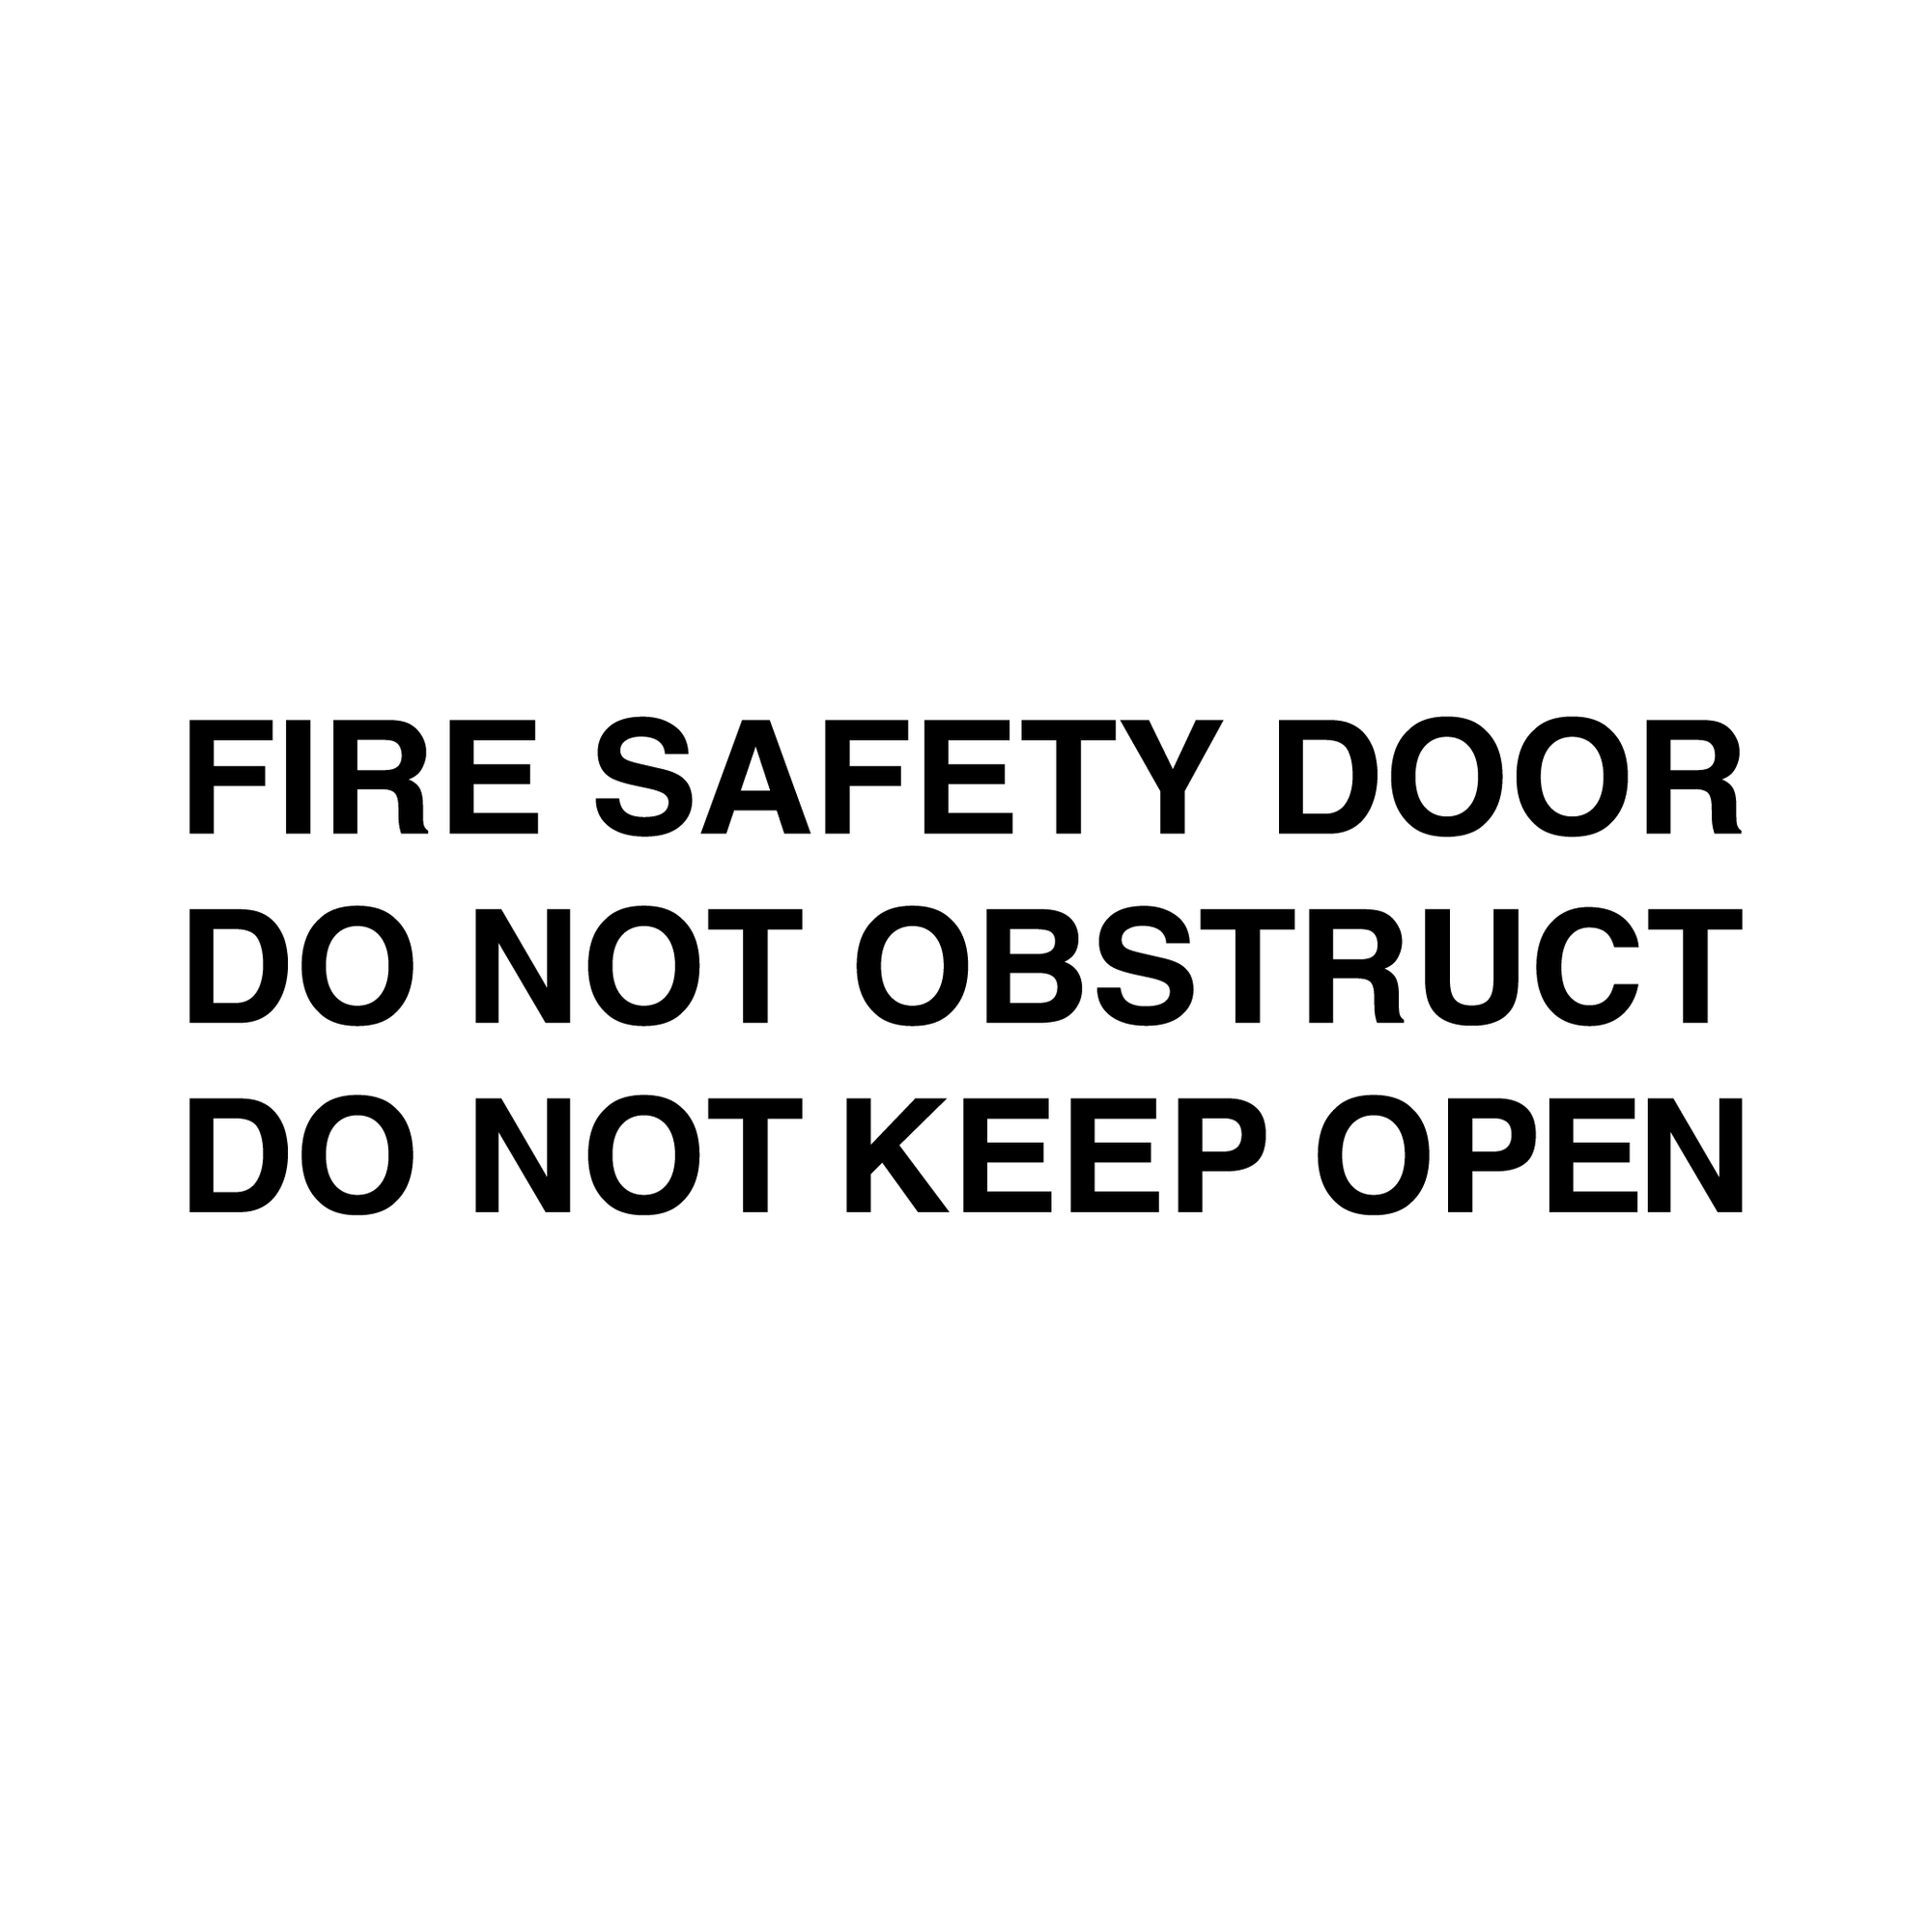 Fire Door Stickers - FIRE SAFETY DOOR, DO NOT OBSTRUCT, DO NOT KEEP OPEN